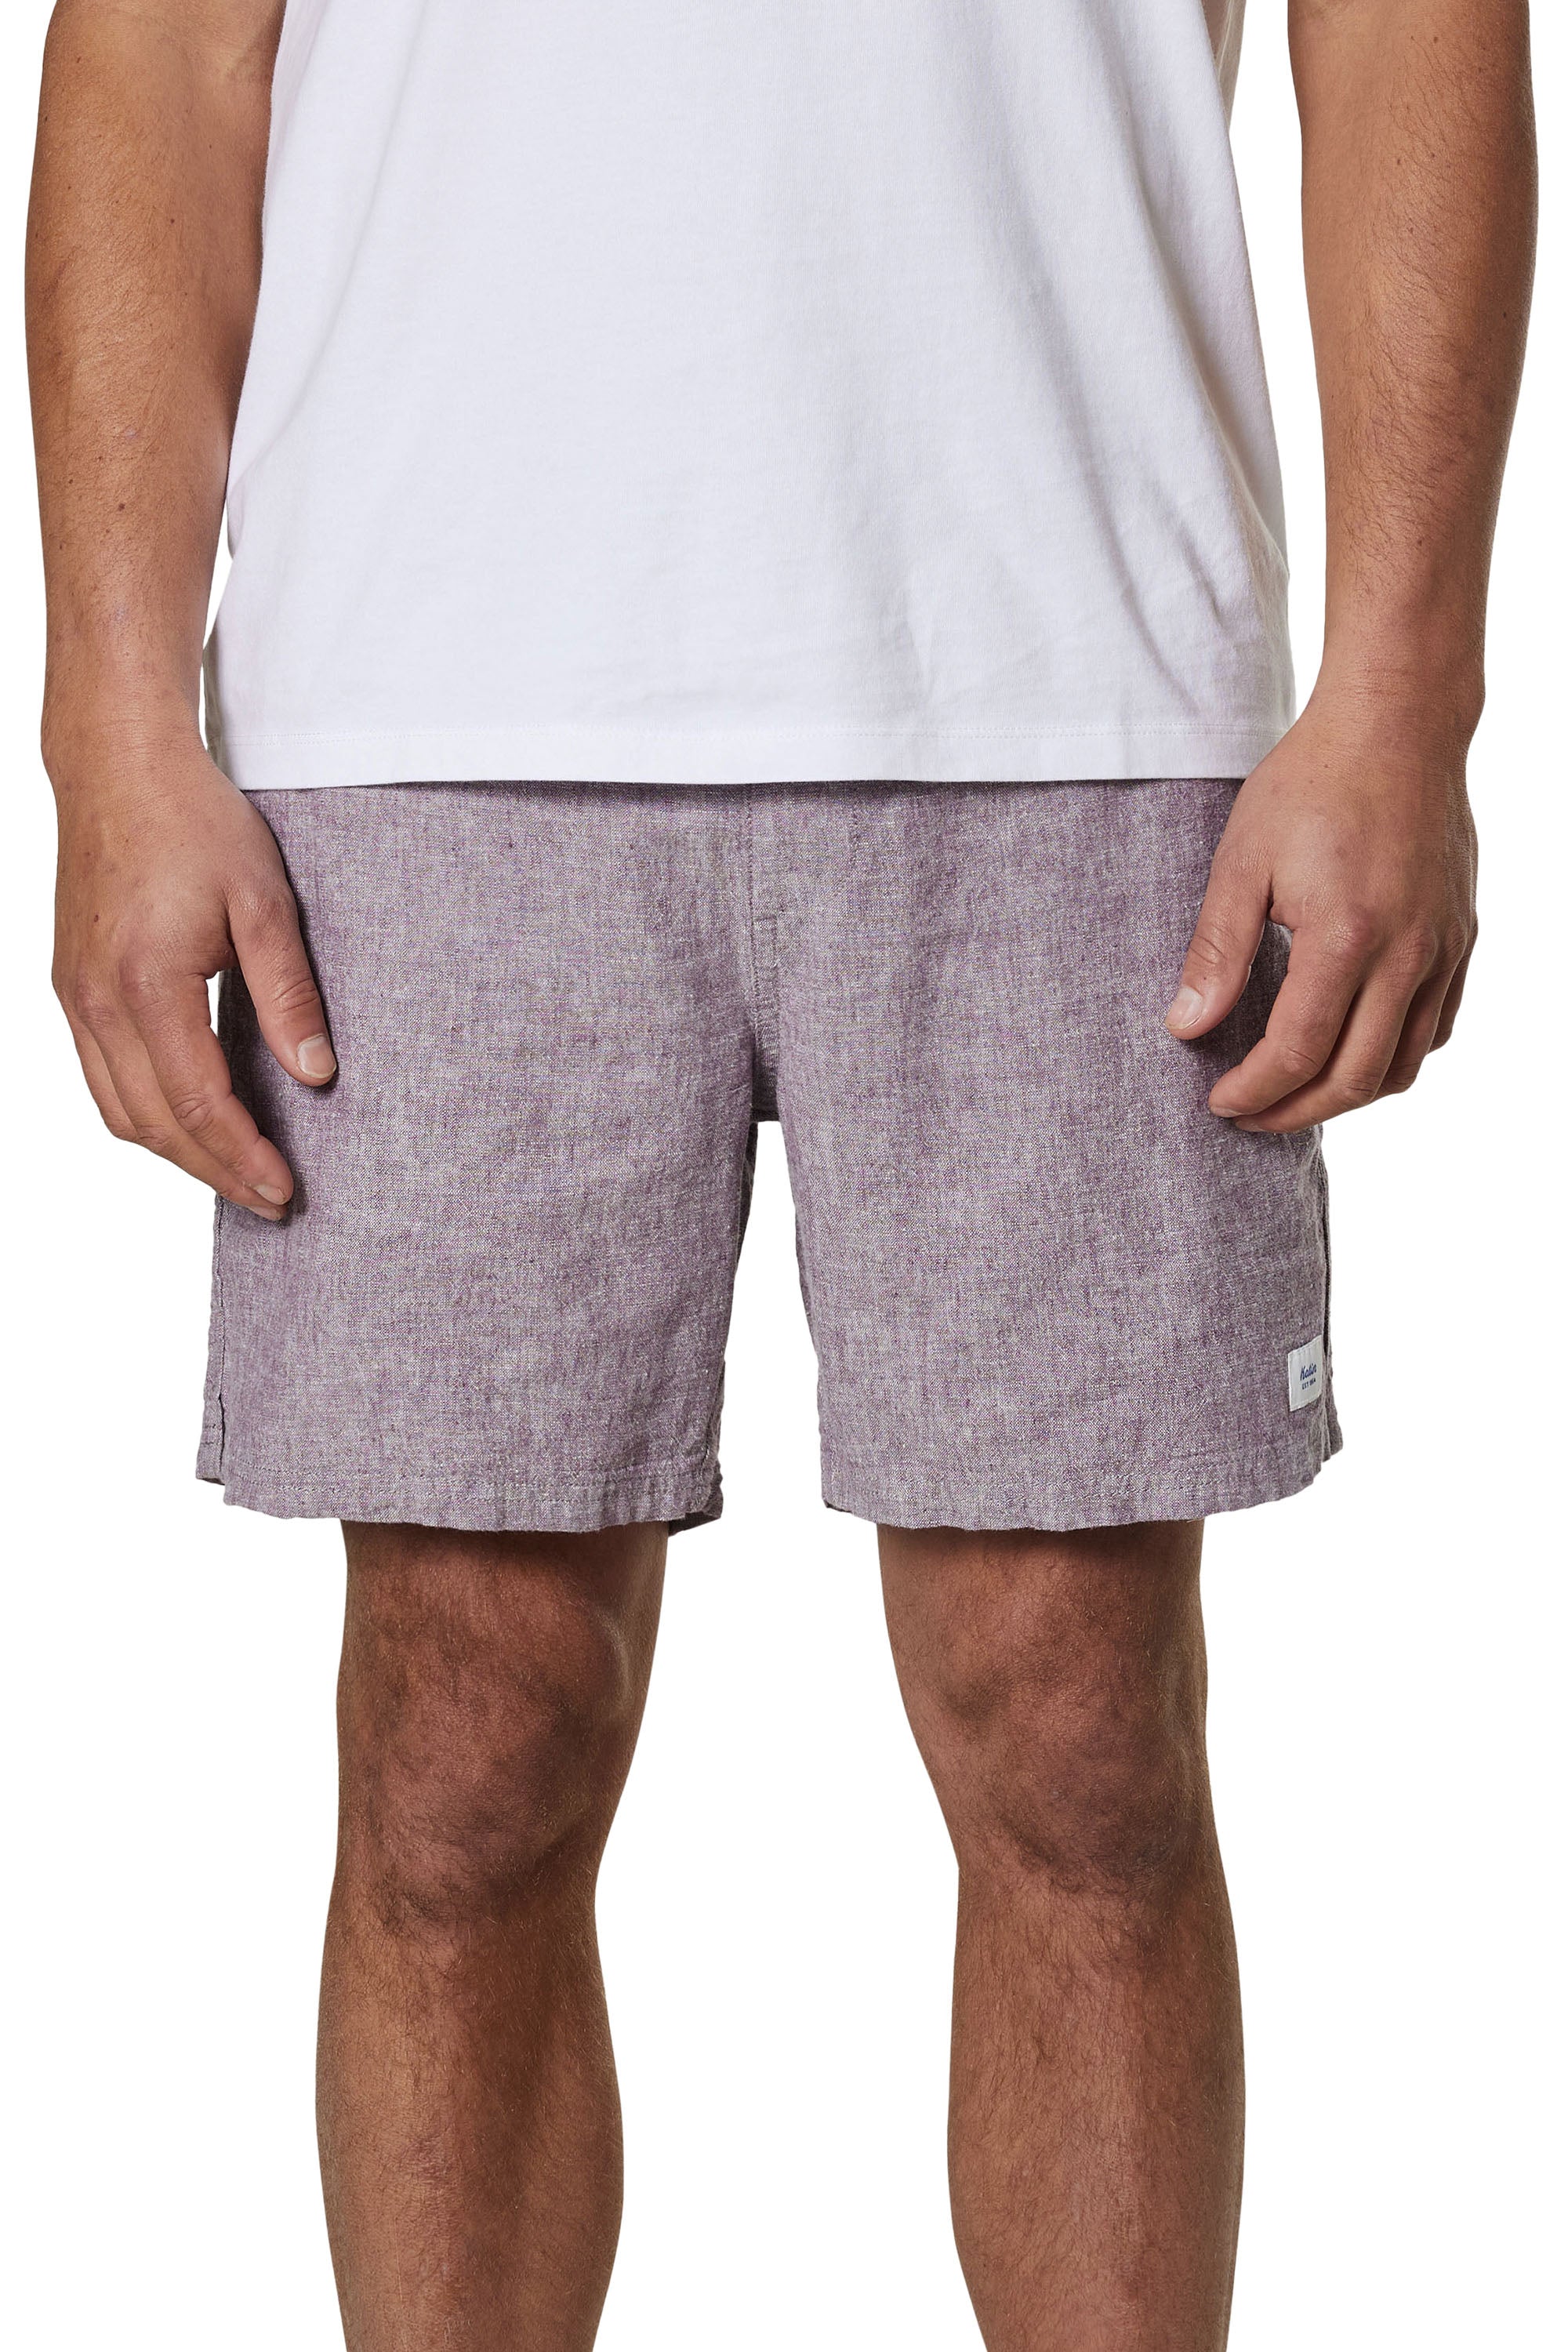 Isaiah Local men's shorts | Katin USA